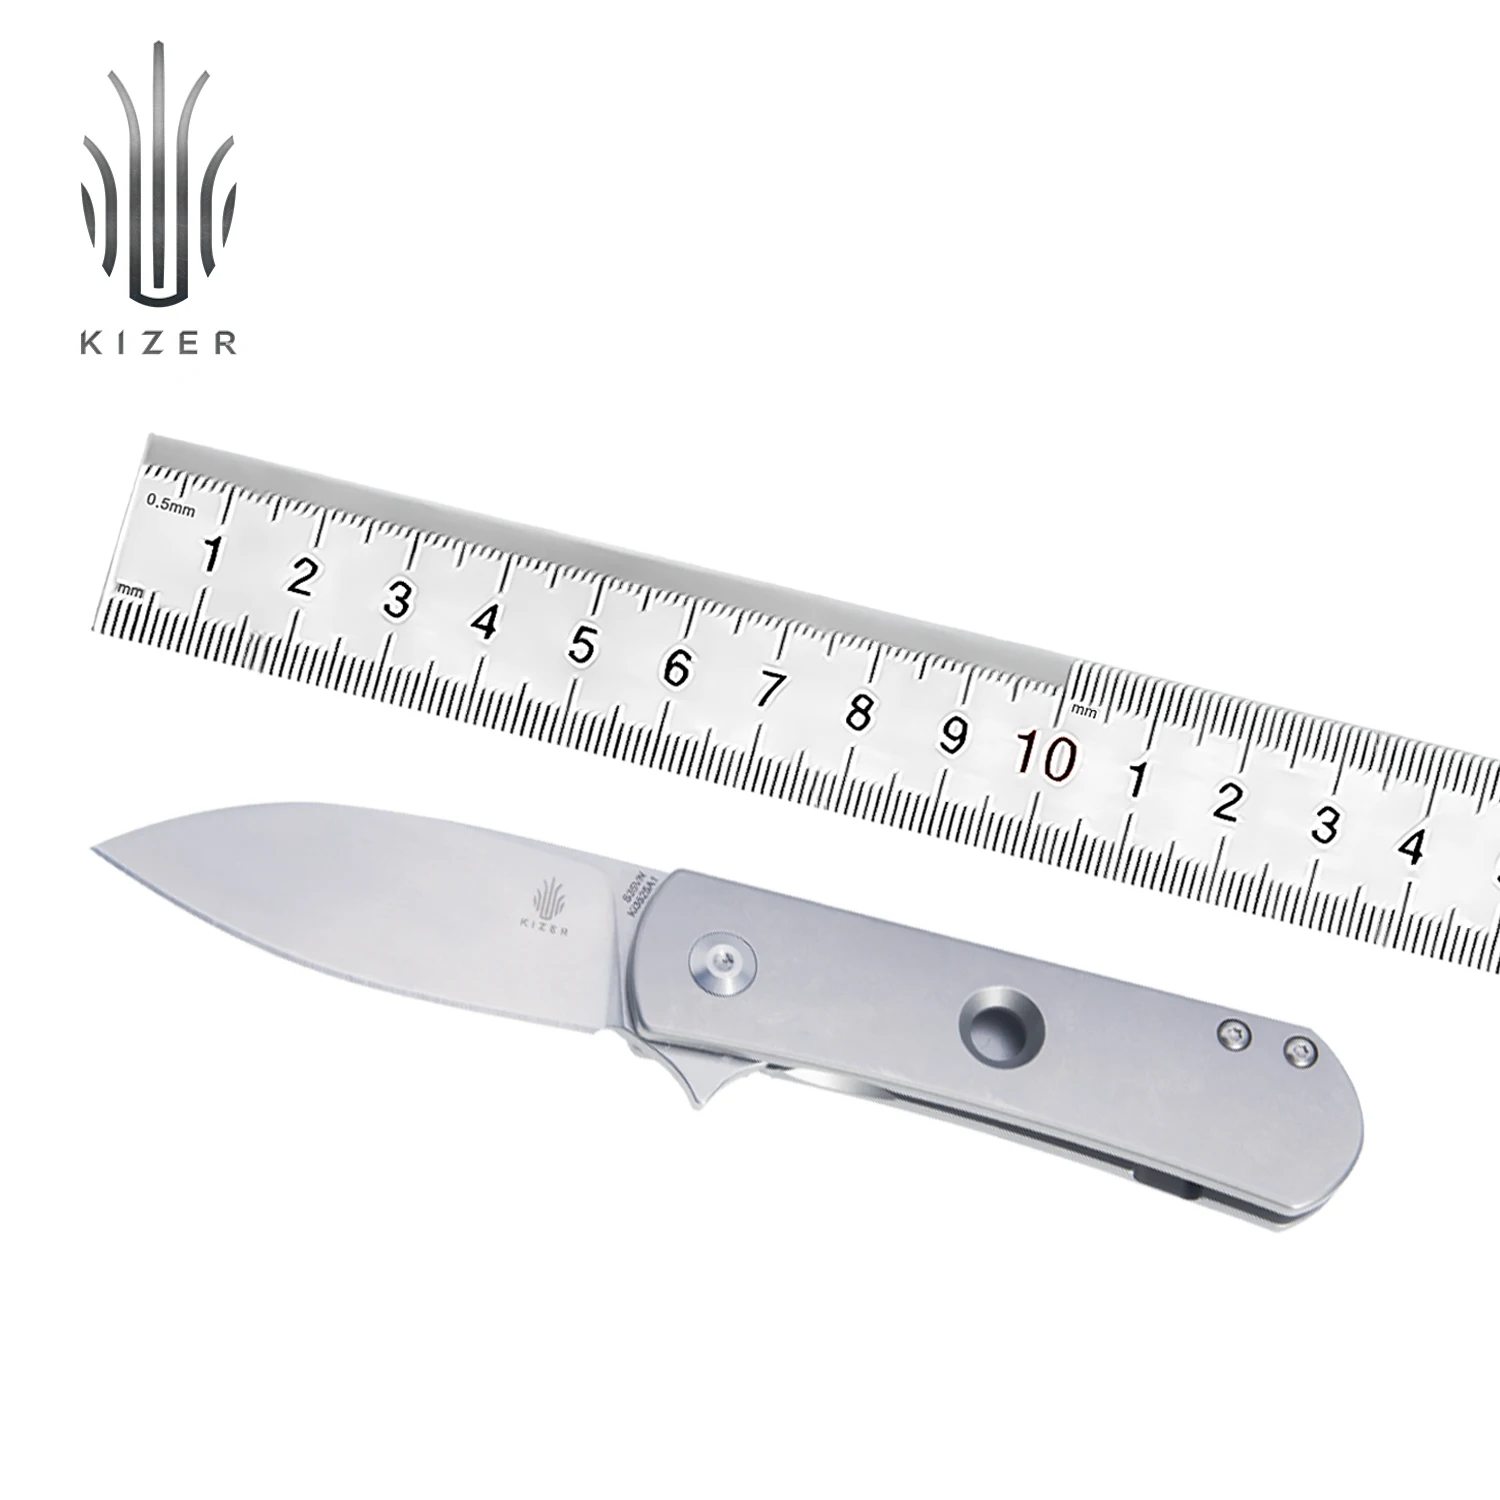 Фото Мини-нож Kizer Yorkie KI3525A1 нож для повседневного использования высококачественный